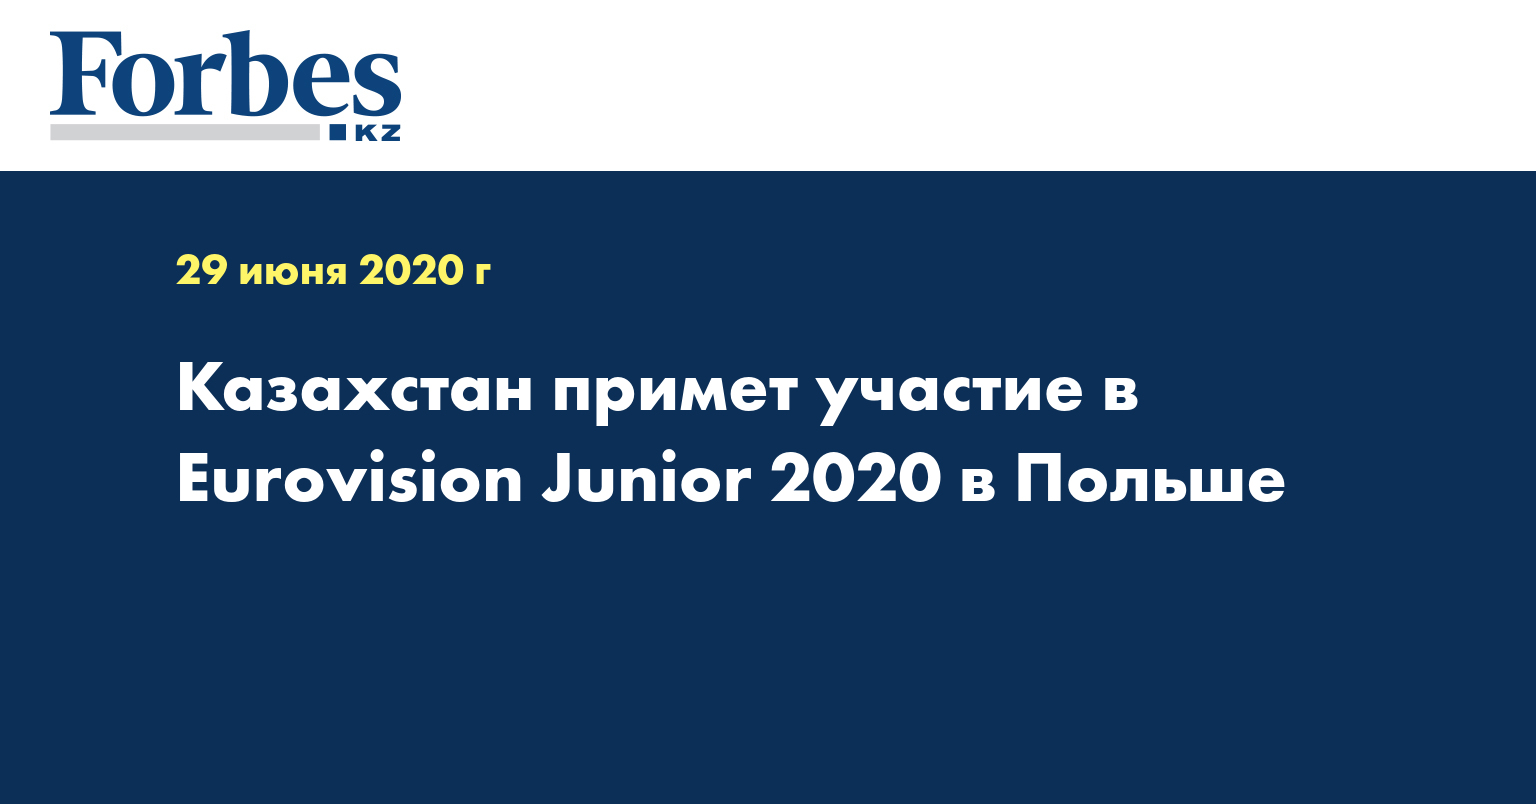 Казахстан примет участие в Eurovision Junior 2020 в Польше